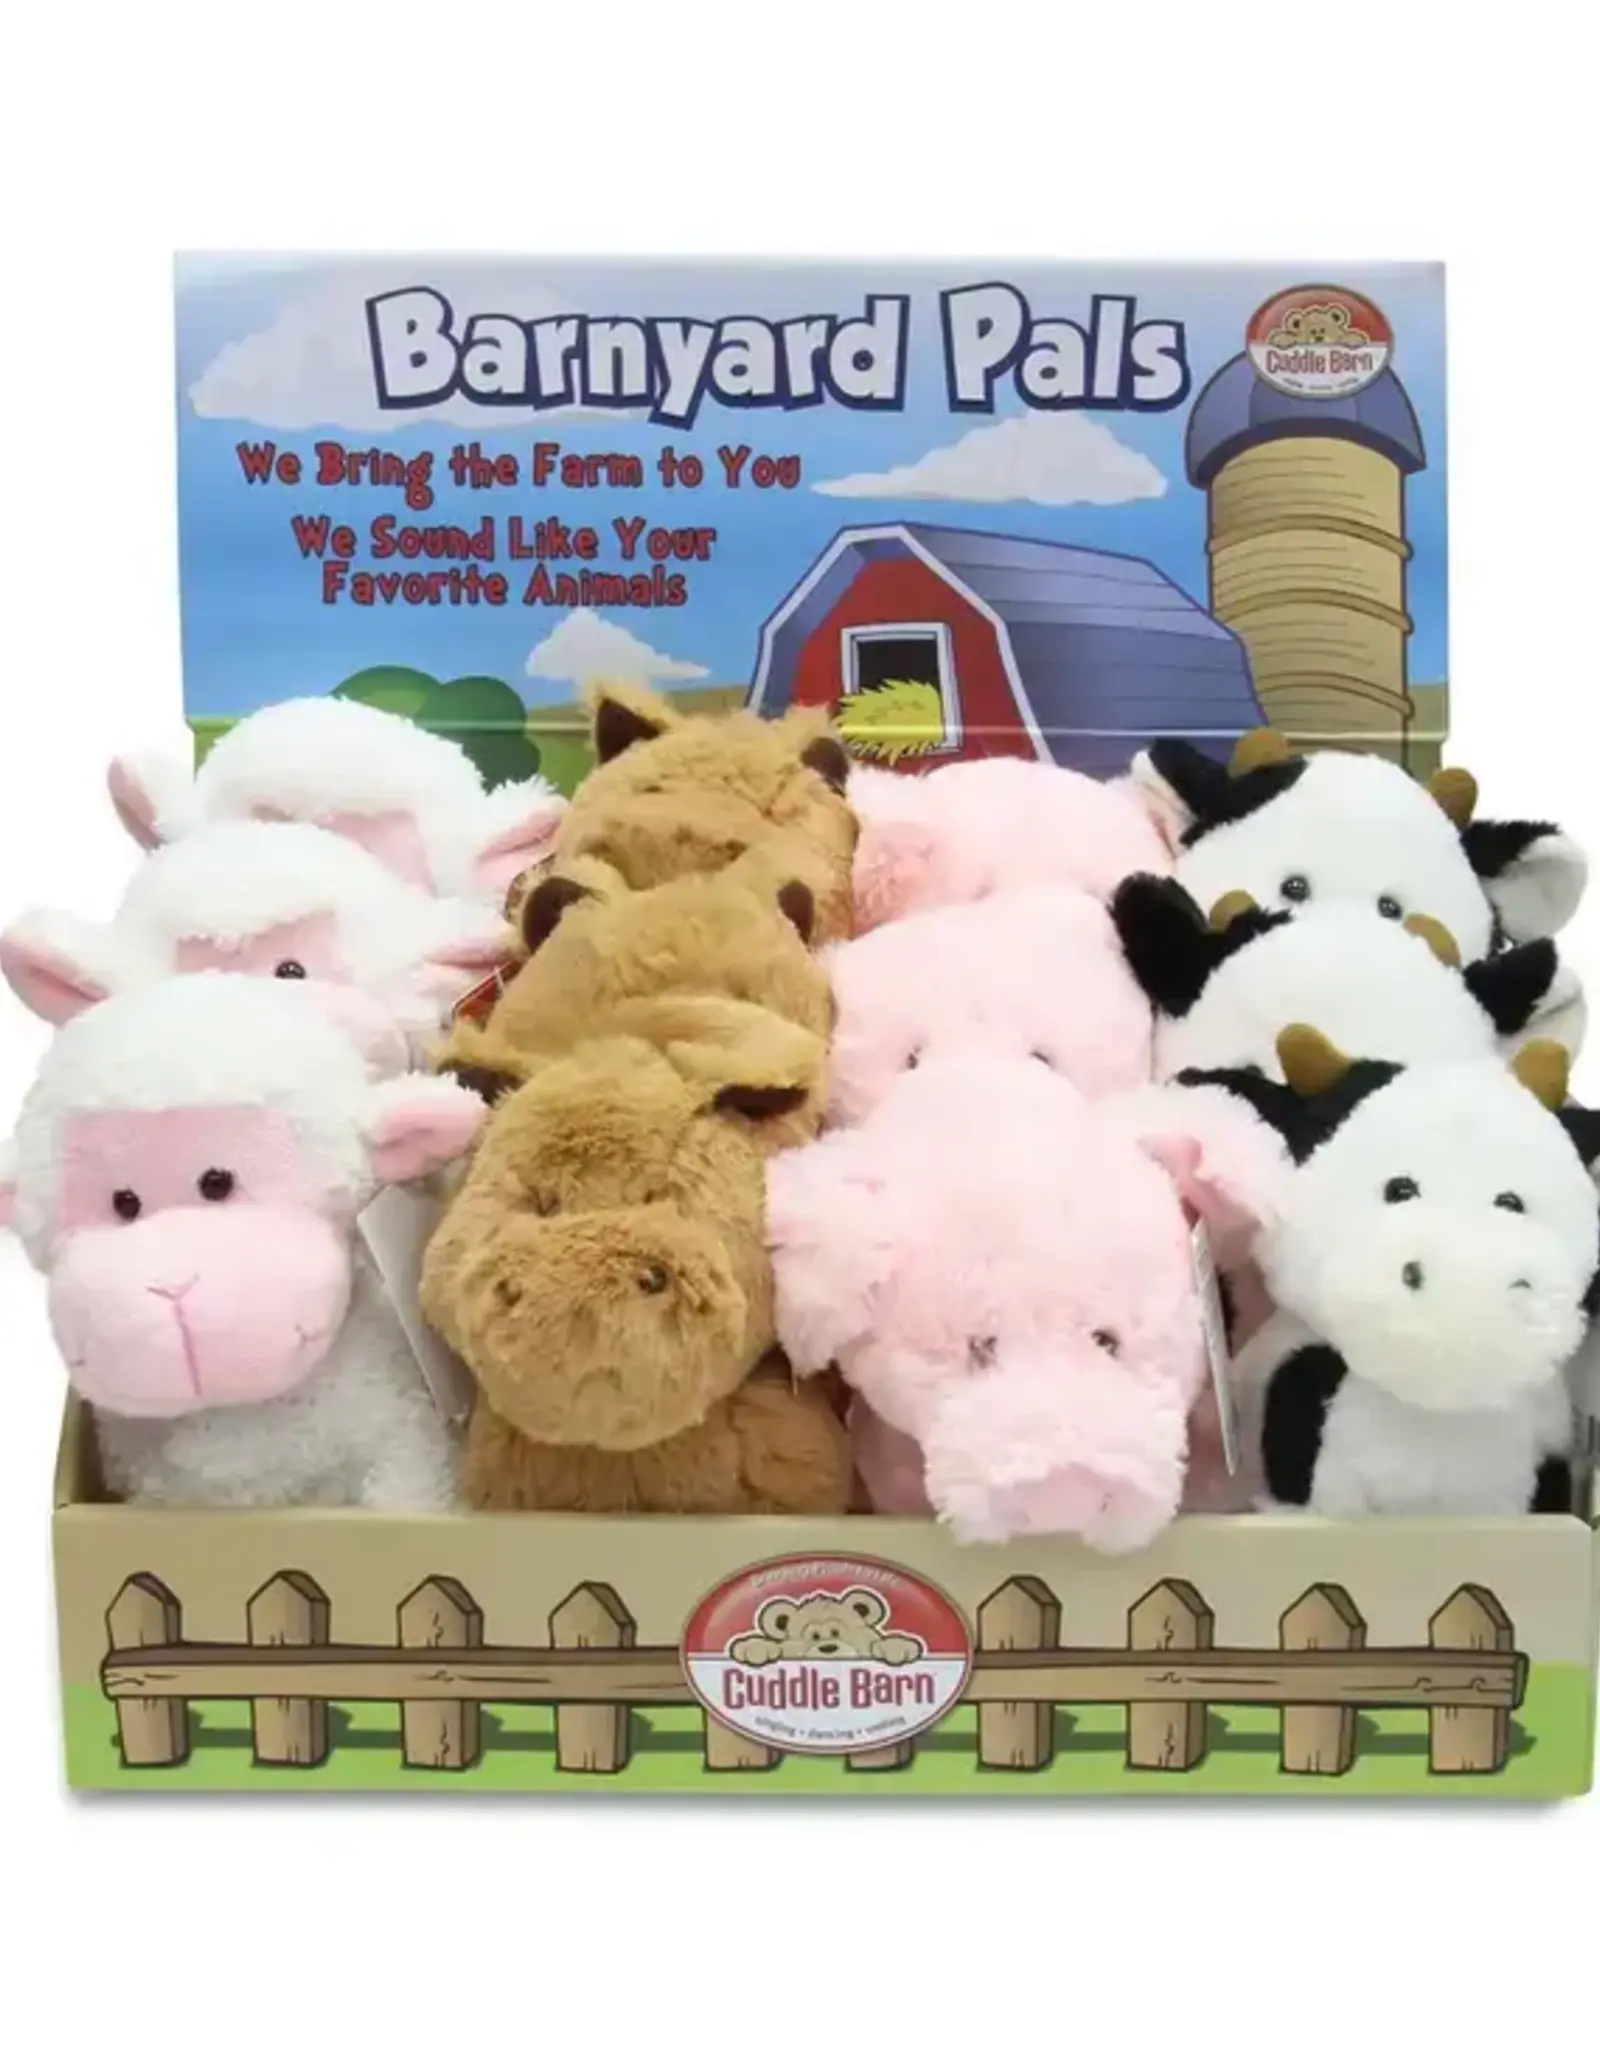 Cuddle Barn Barnyard Pals